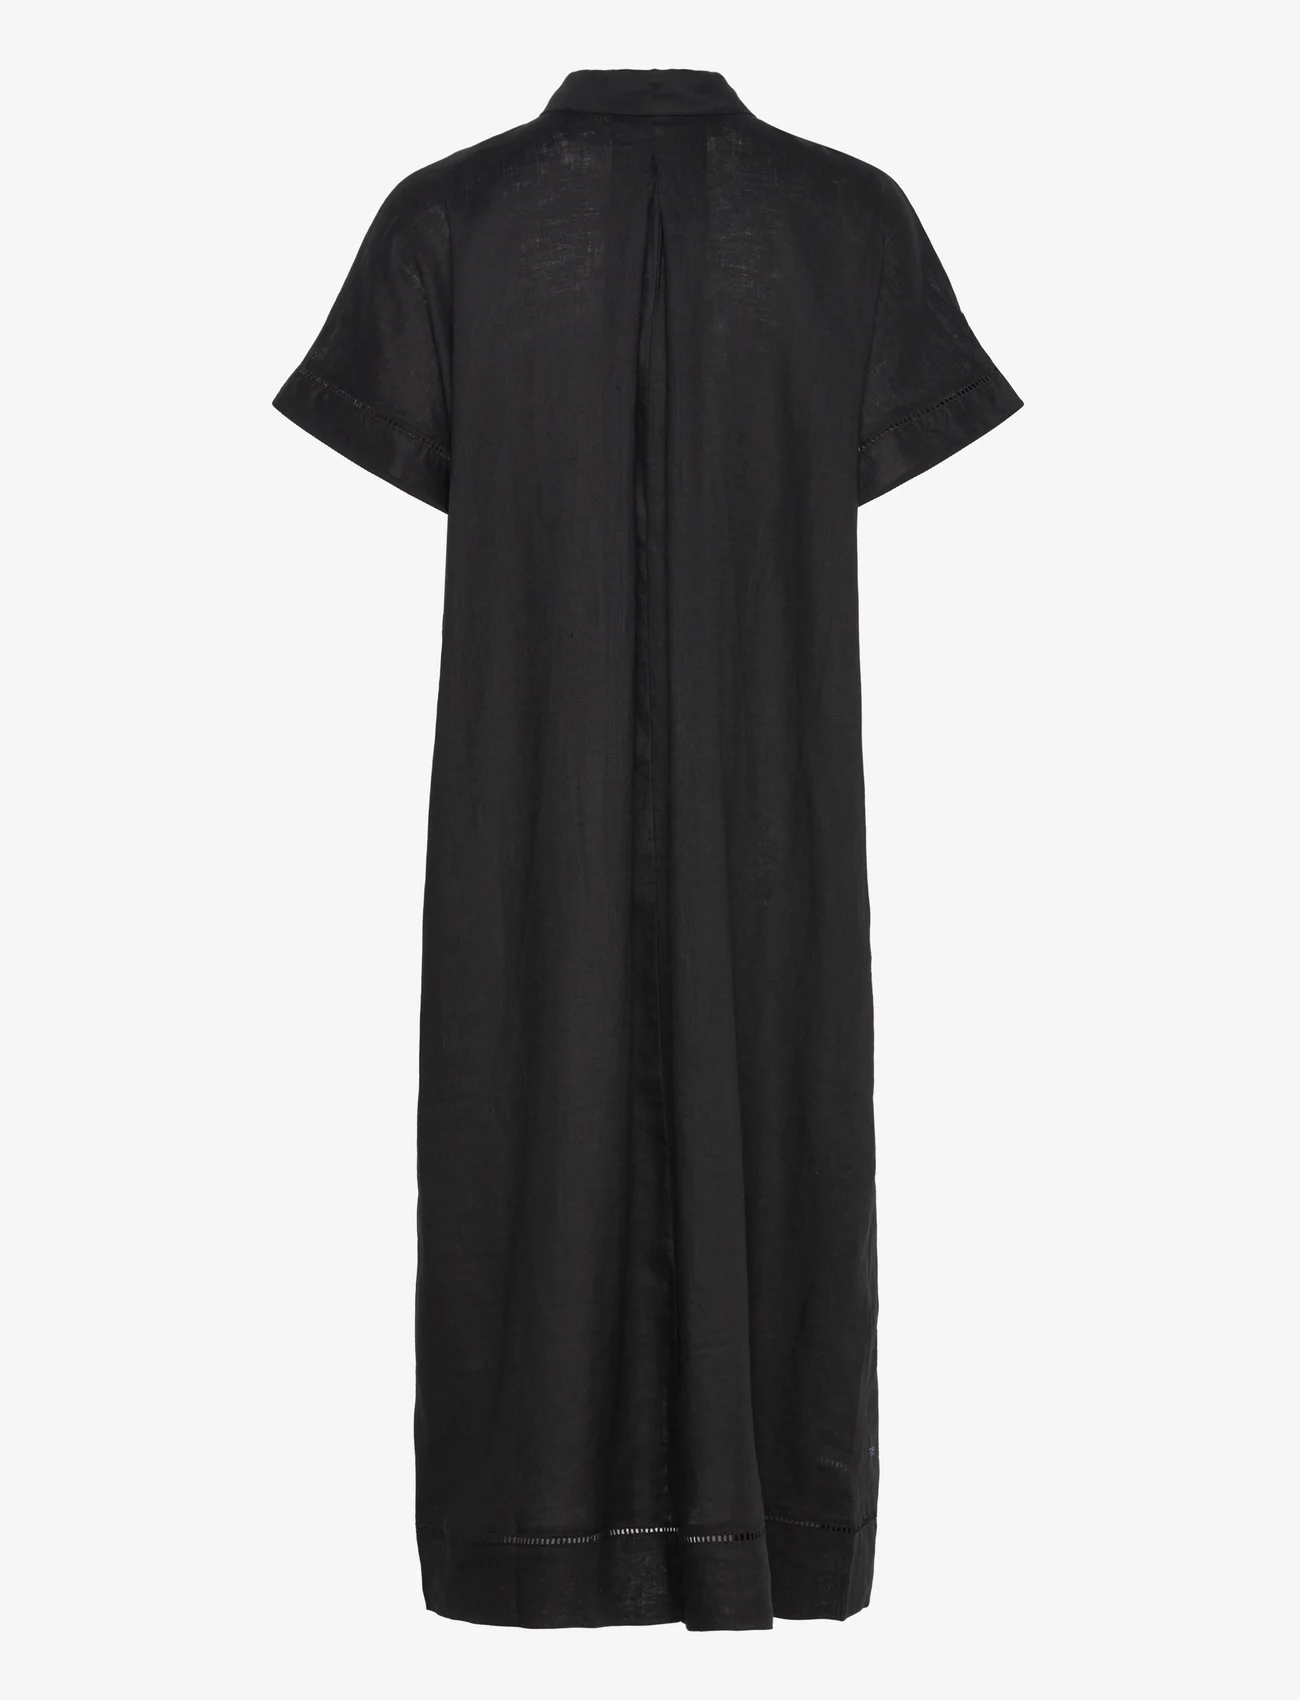 Lindex - Dress Laila pure linen - skjortekjoler - black - 1